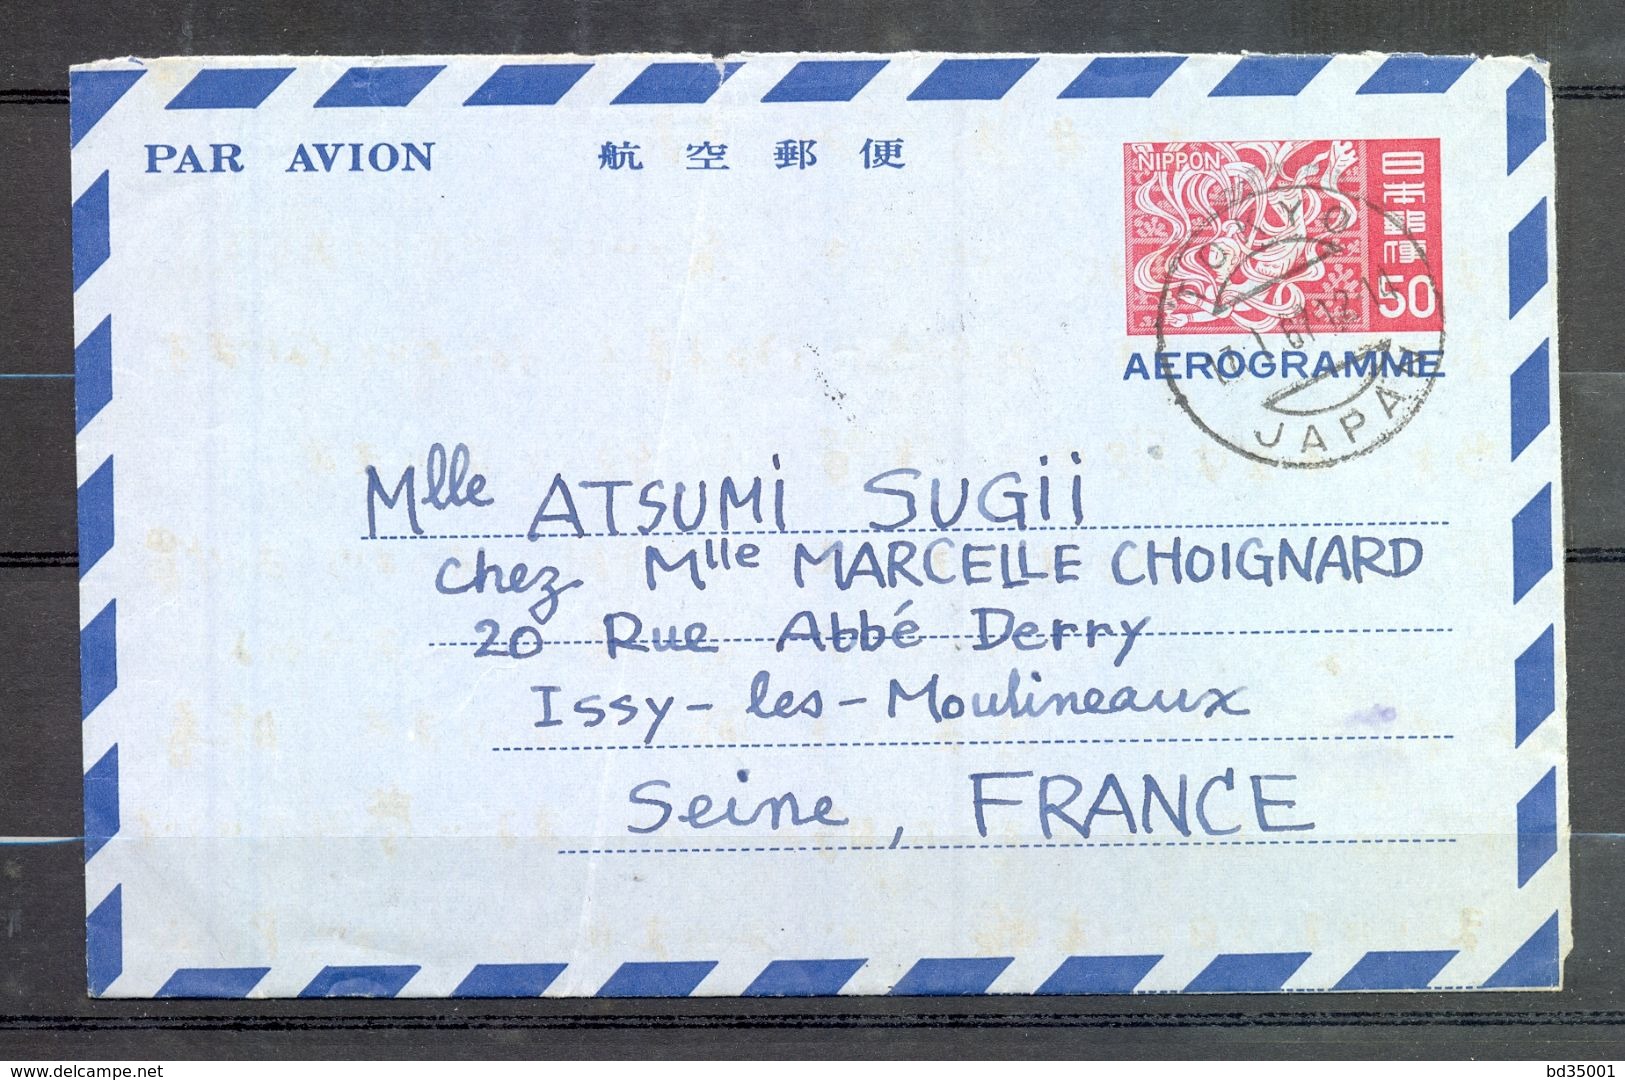 AEROGRAMME AIR LETTER PAR AVION - JAPON JAPAN - Tokyo Vers Issy Les Moulineaux - 1967 - (3) - Aerogramme